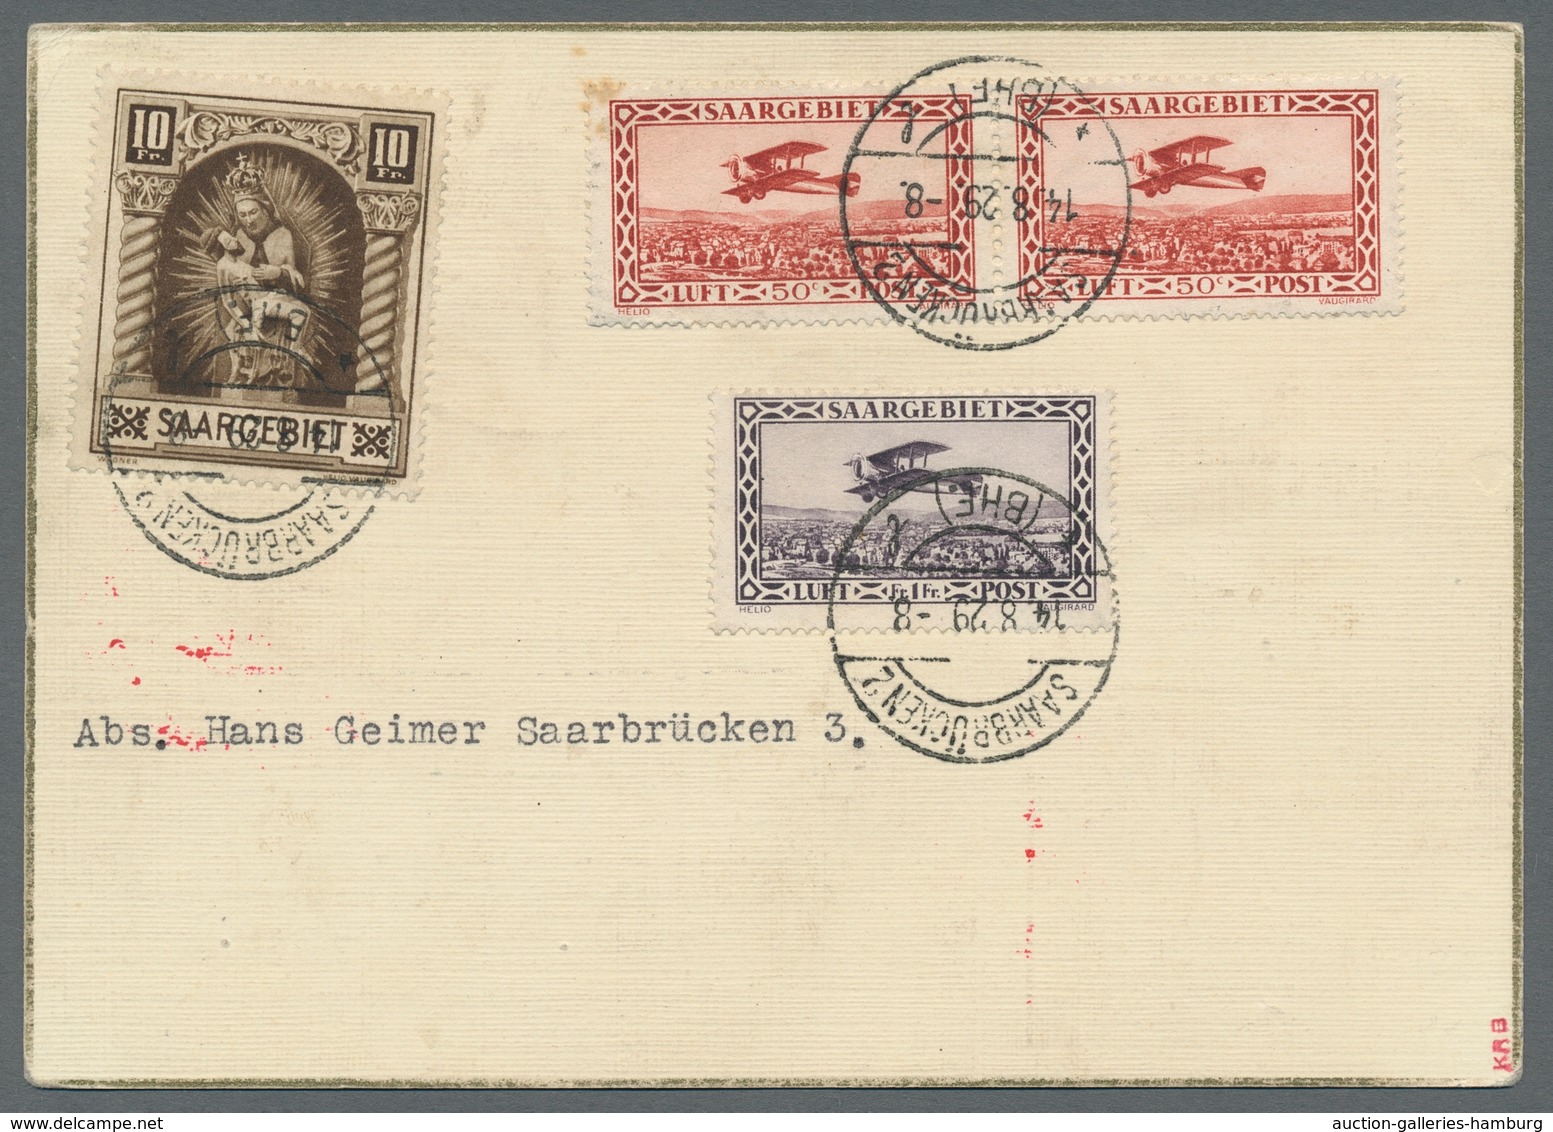 Zeppelinpost Deutschland: 1929 - Weltrundfahrt/Etappe Friedrichshafen-Lakehurst, Hochwertig Frankier - Luft- Und Zeppelinpost